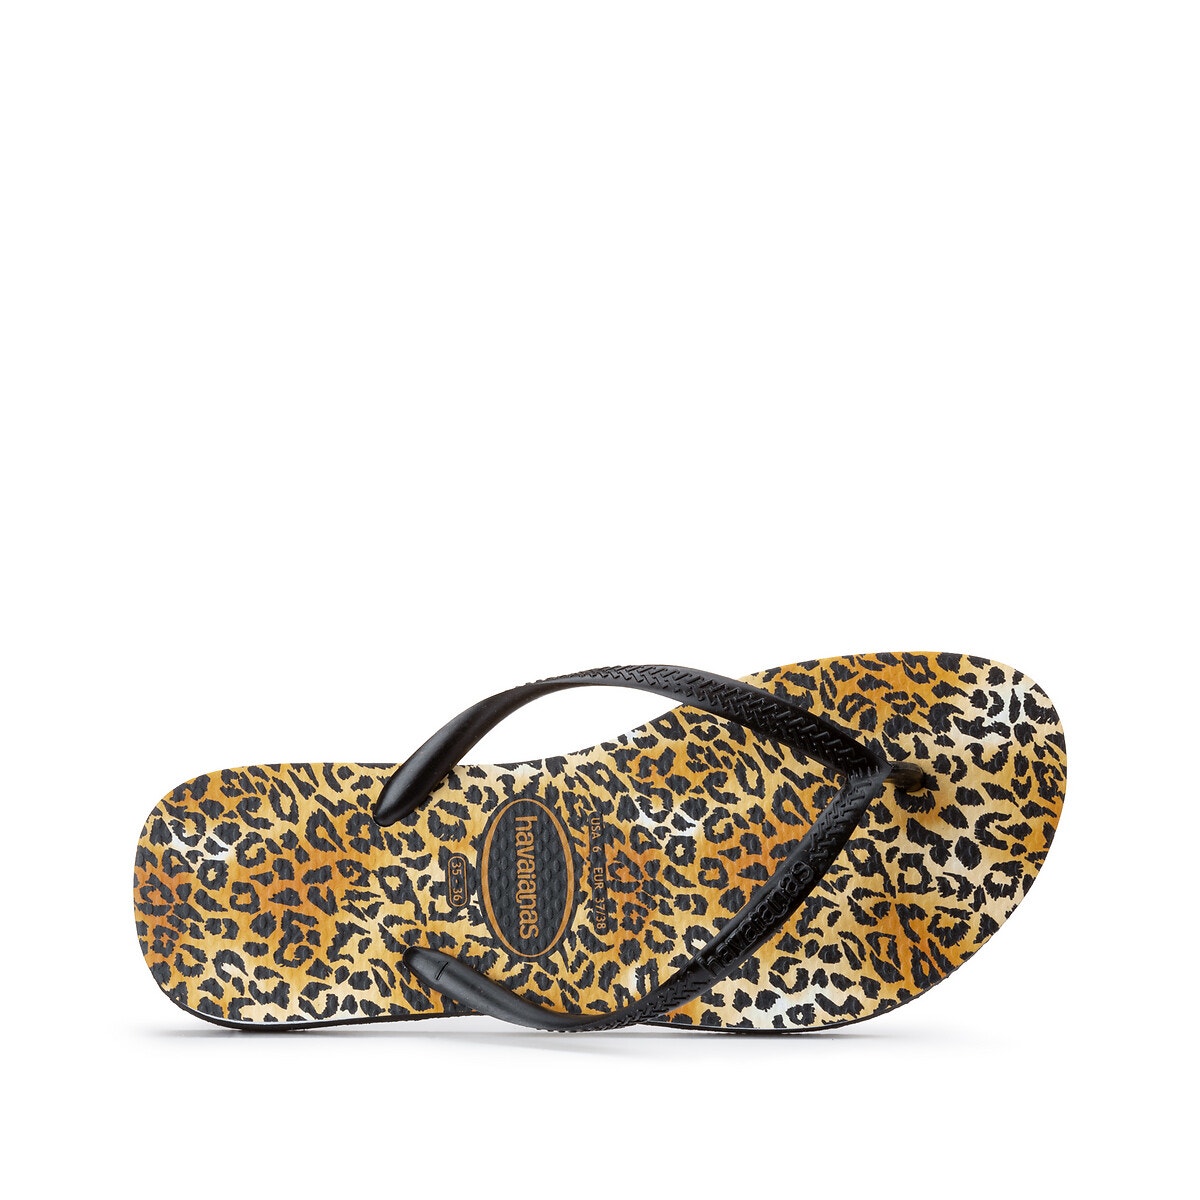 ΓΥΝΑΙΚΑ | Παπούτσια | Σαγιονάρες Σαγιονάρες, Slim Leopard